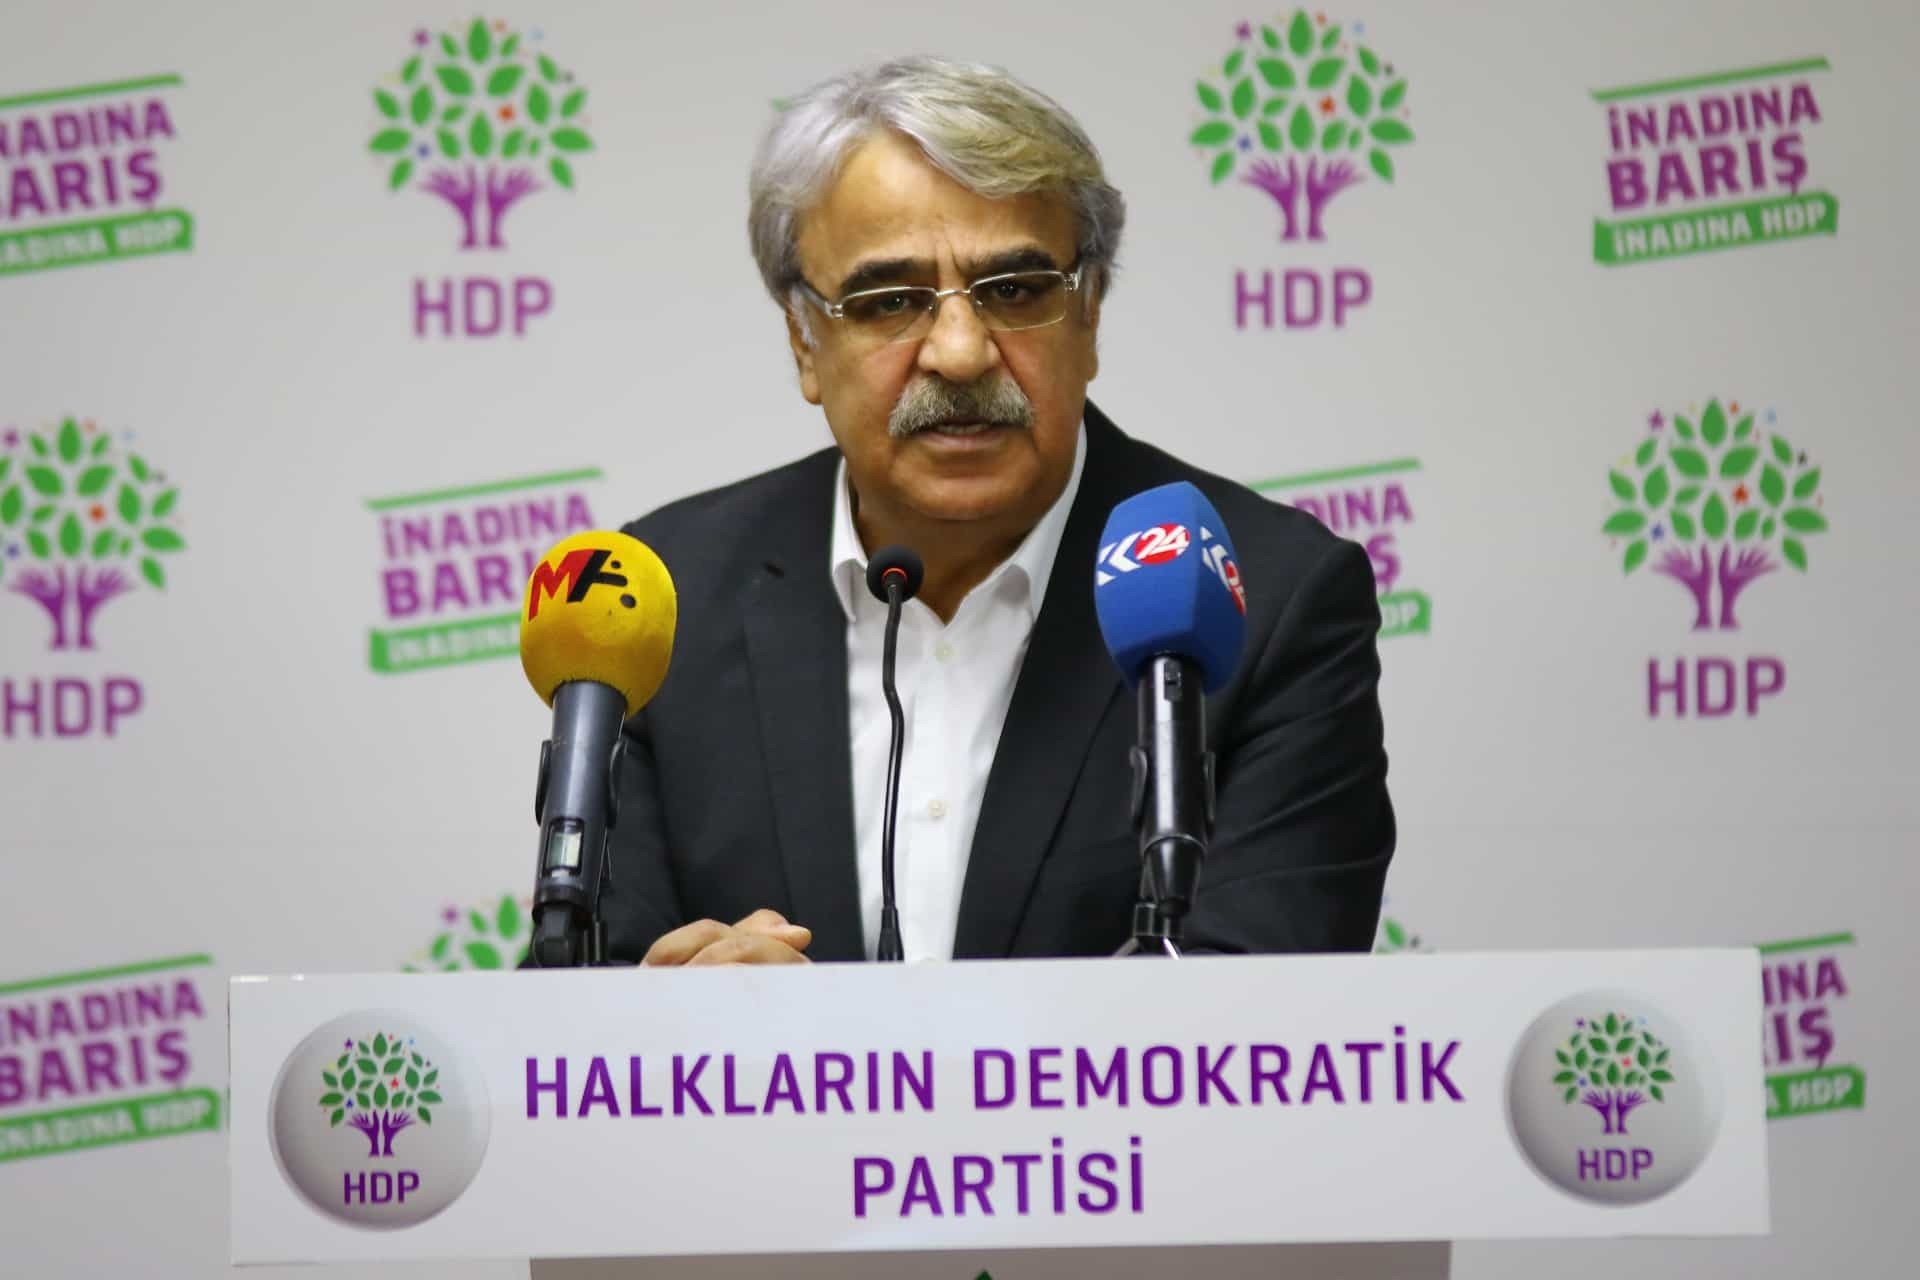 دلیل اصلی جنگ افروزی حکومت دشمنی با کردها است/AKP به دنبال همسو کردن احزاب اپوزیسیون است